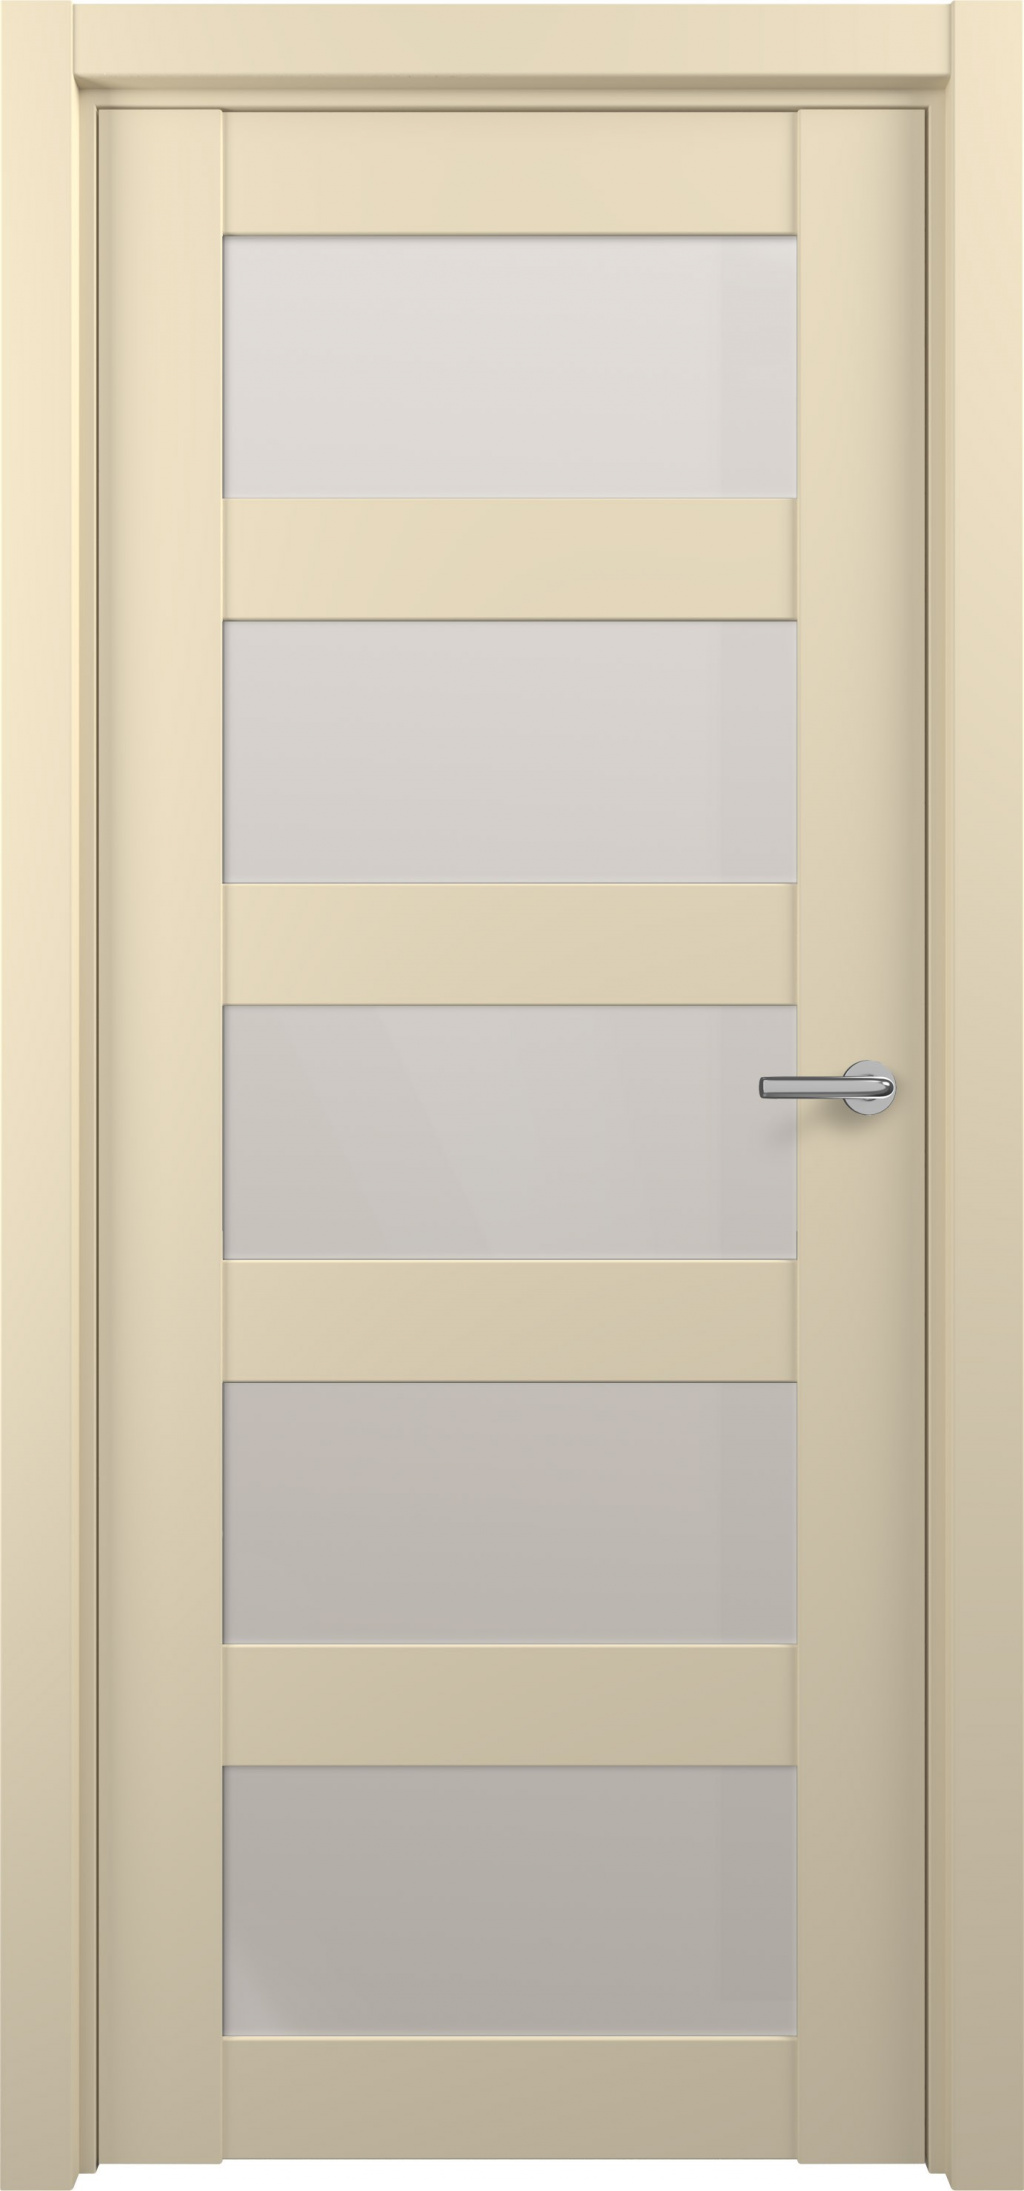 Zadoor Межкомнатная дверь S15, арт. 15822 - фото №1